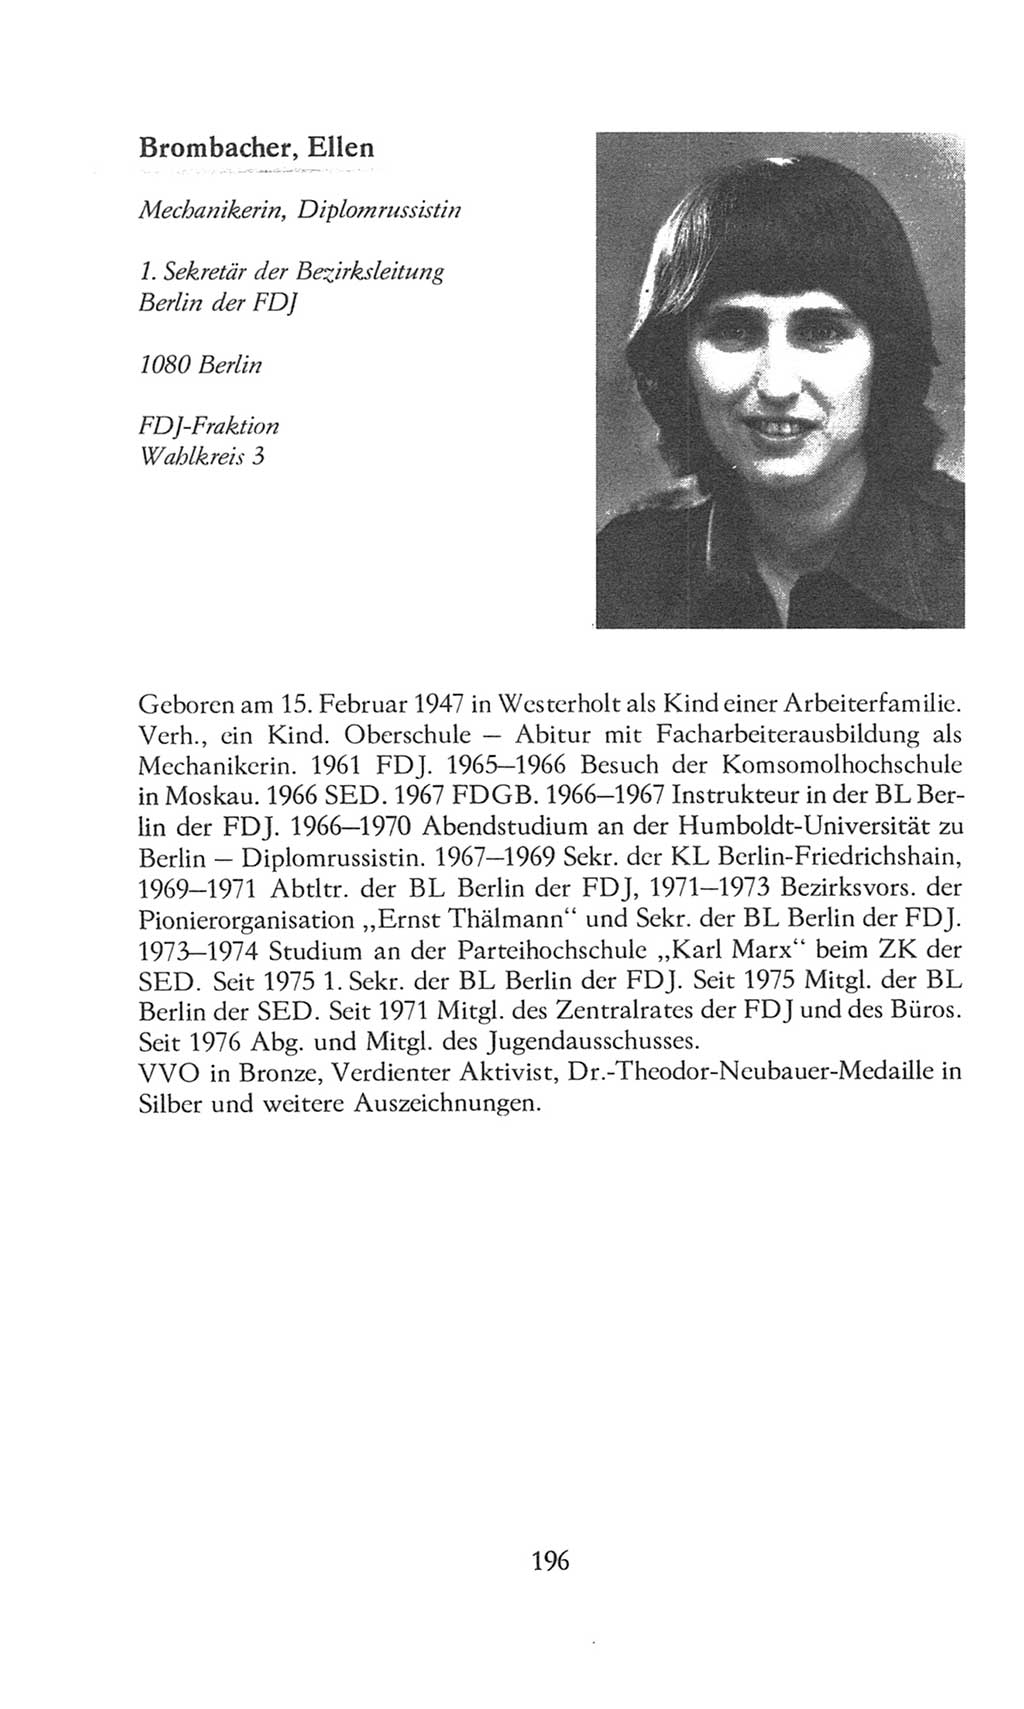 Volkskammer (VK) der Deutschen Demokratischen Republik (DDR), 8. Wahlperiode 1981-1986, Seite 196 (VK. DDR 8. WP. 1981-1986, S. 196)